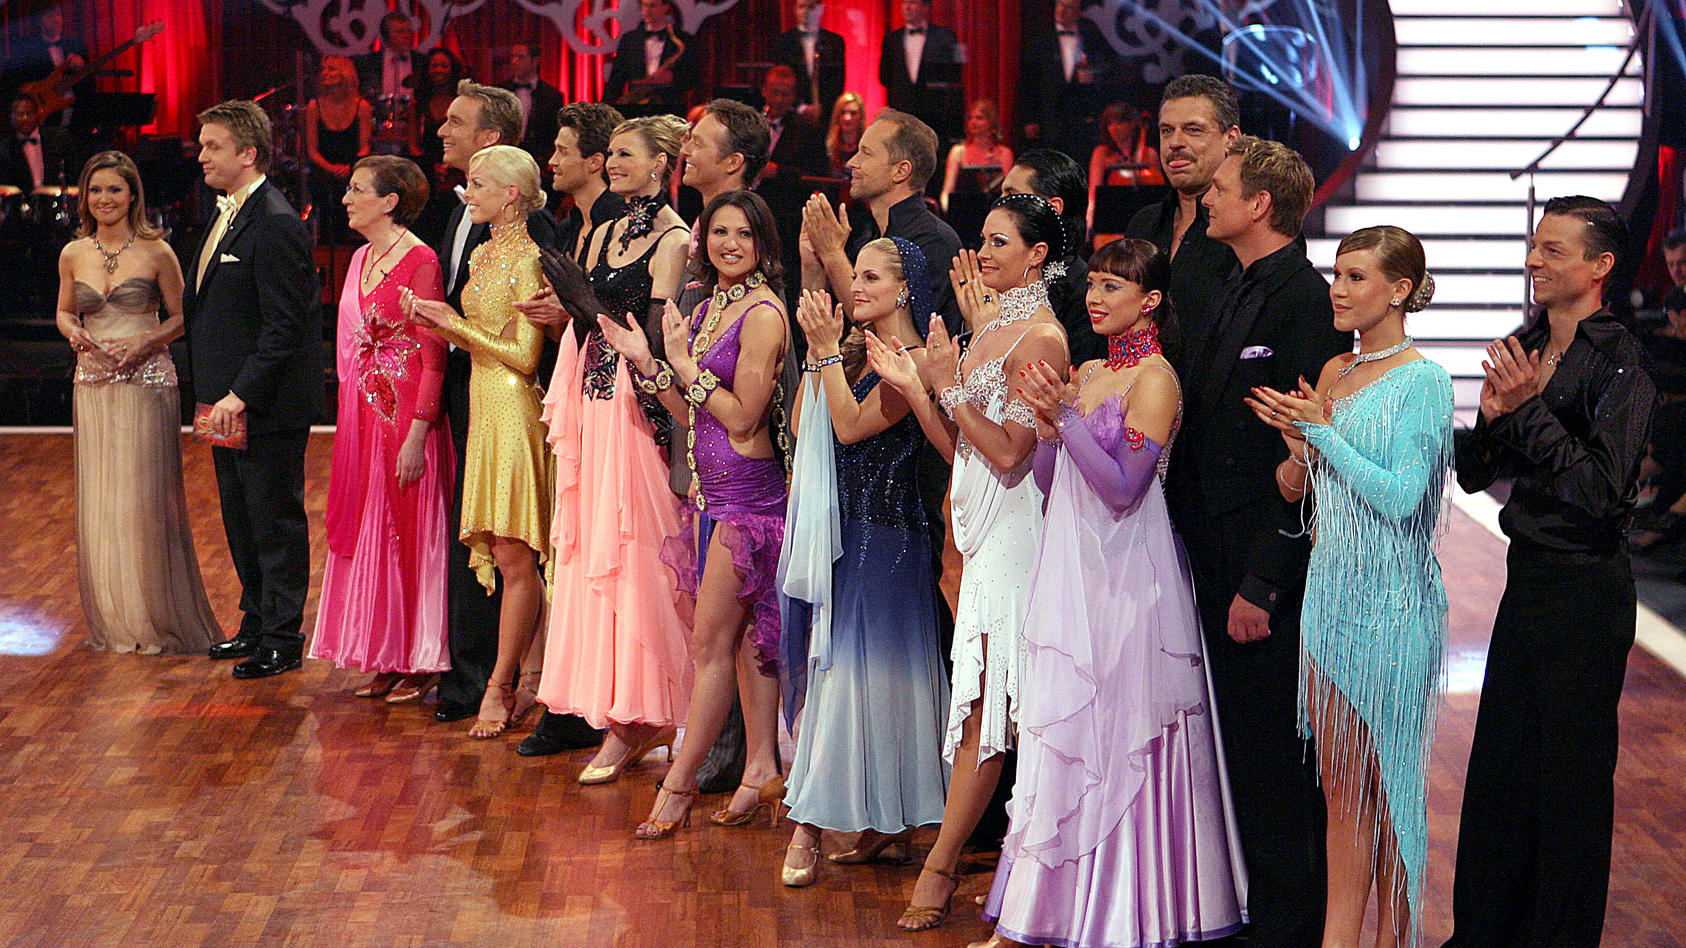 2006-lief-die-erste-lets-dance-staffel-bei-rtl-acht-tanzpaare-nahmen-teil